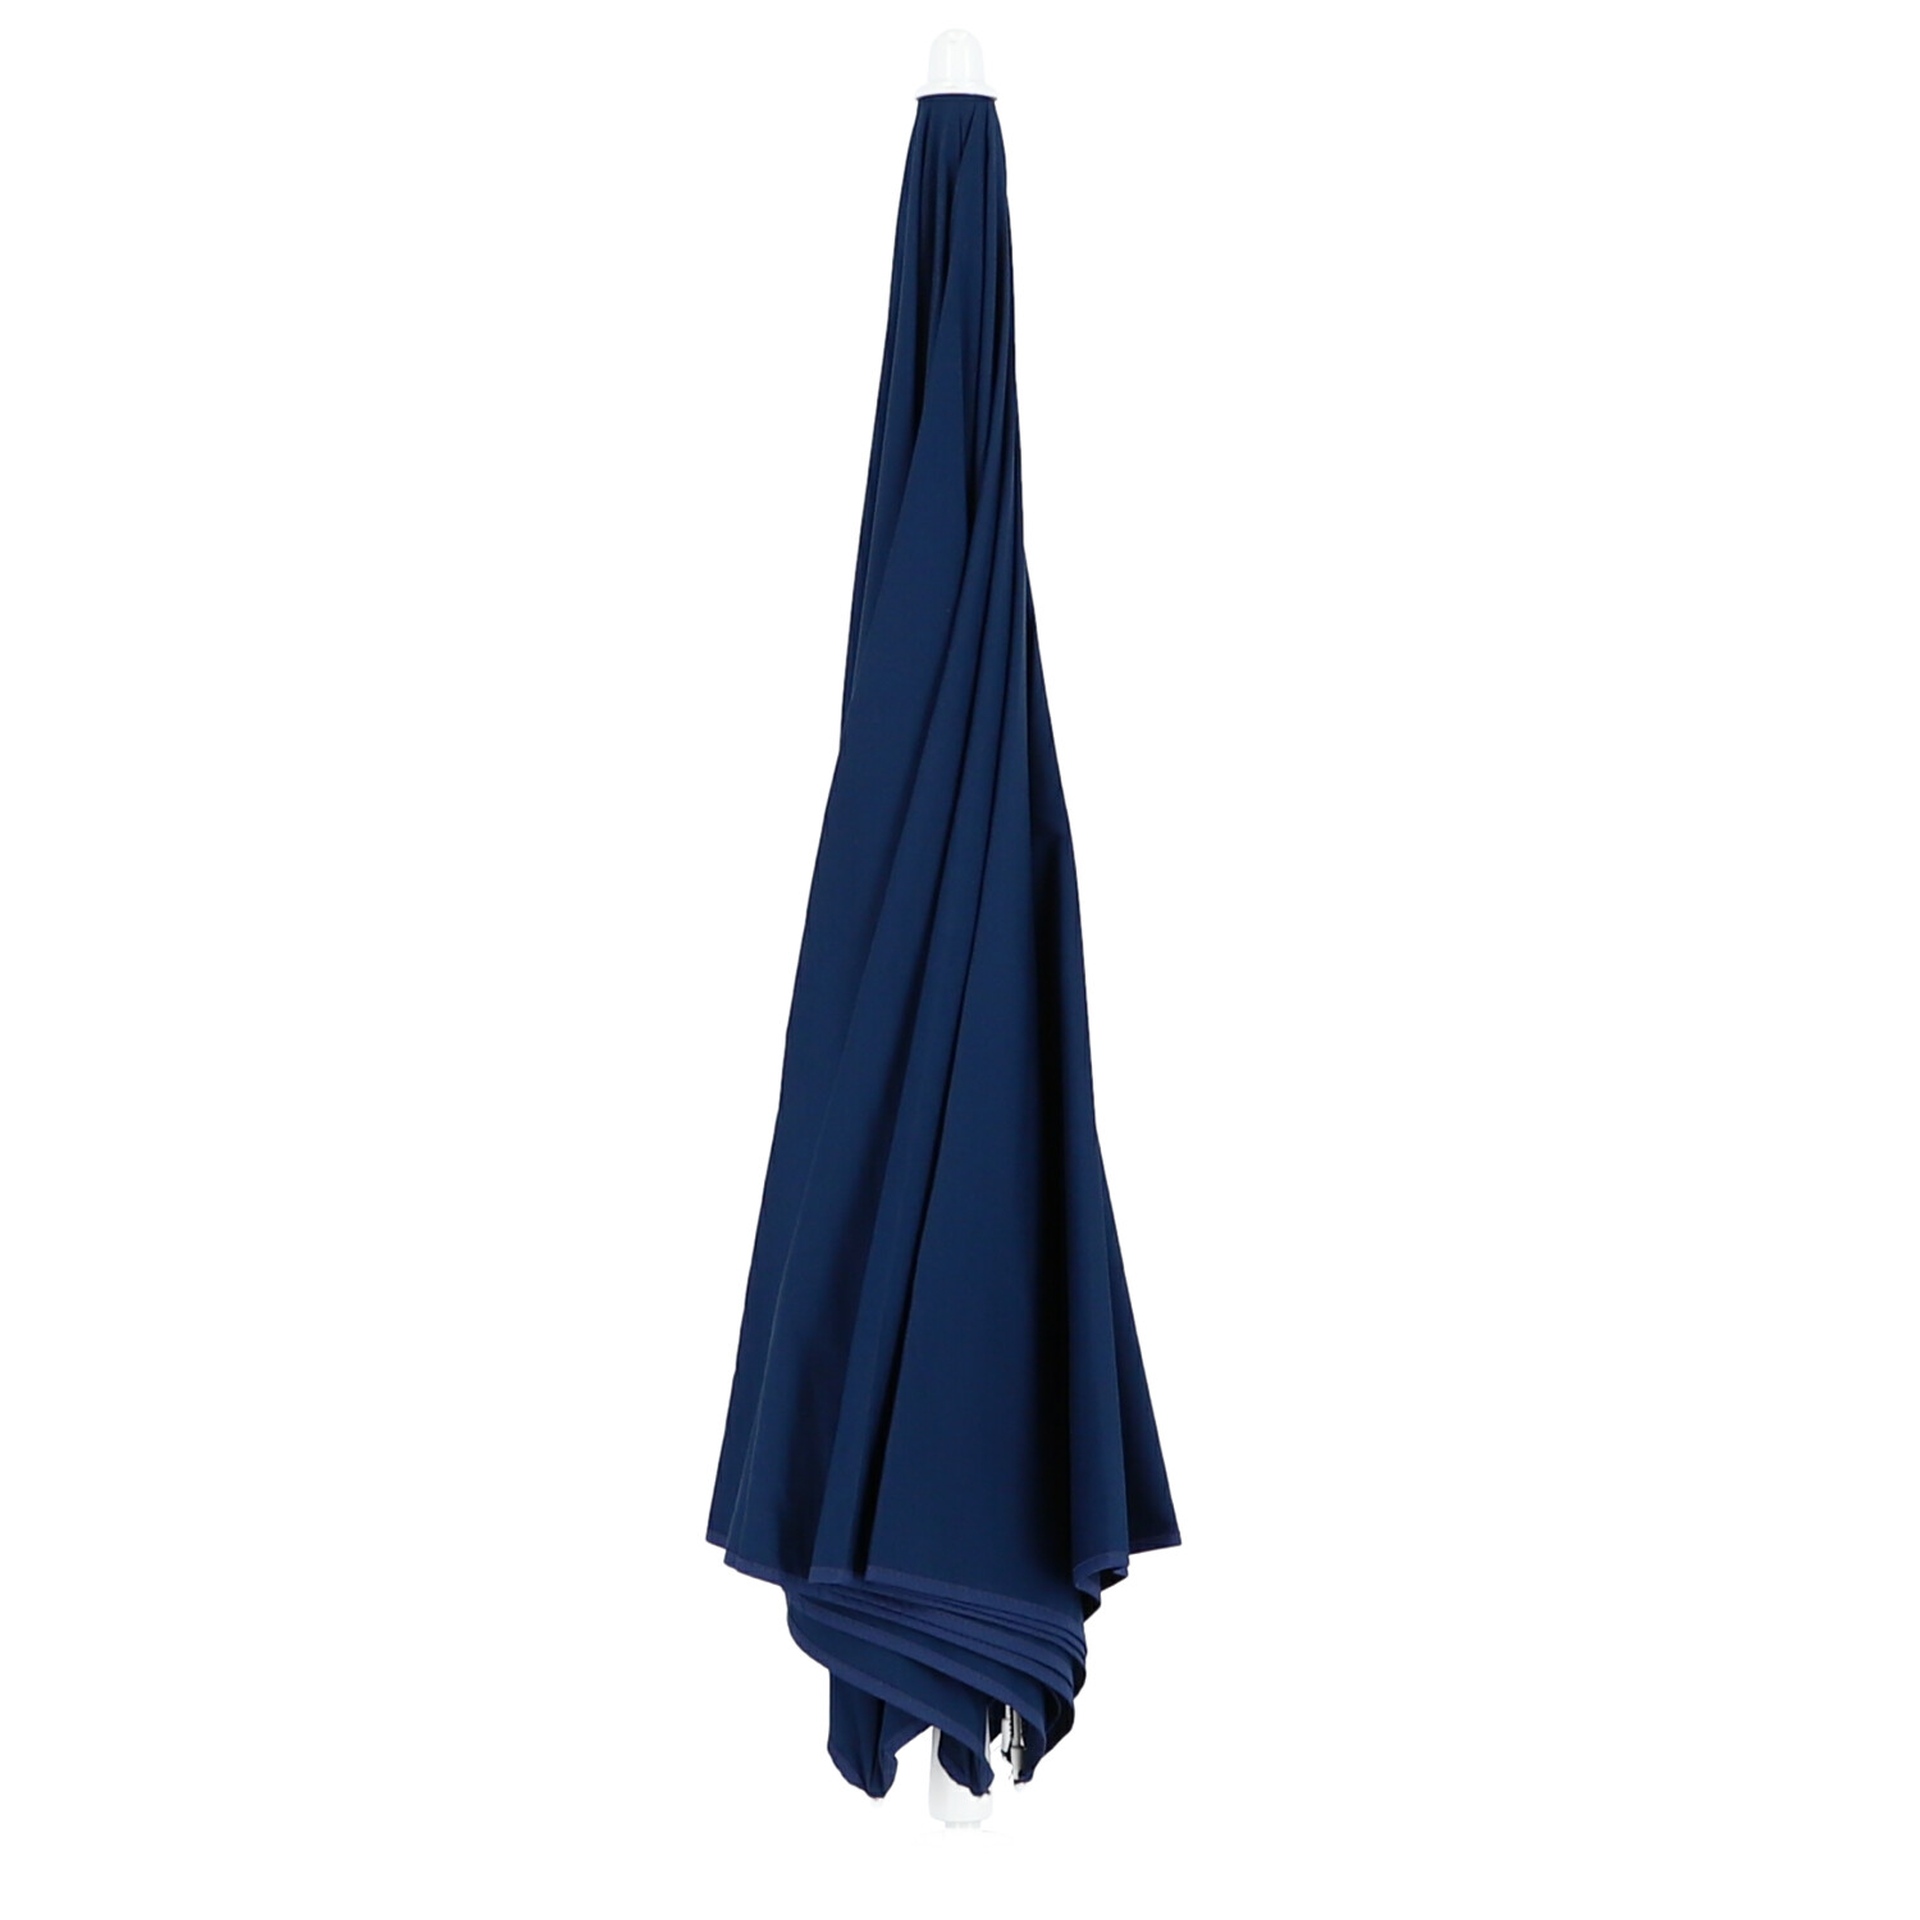 Der Sonnenschirm Revenna überzeugt mit seinem modernen Design. Die Form des Schirms ist Rund. Designet wurde er von der Marke Jan Kurtz und hat die Farbe Blau.